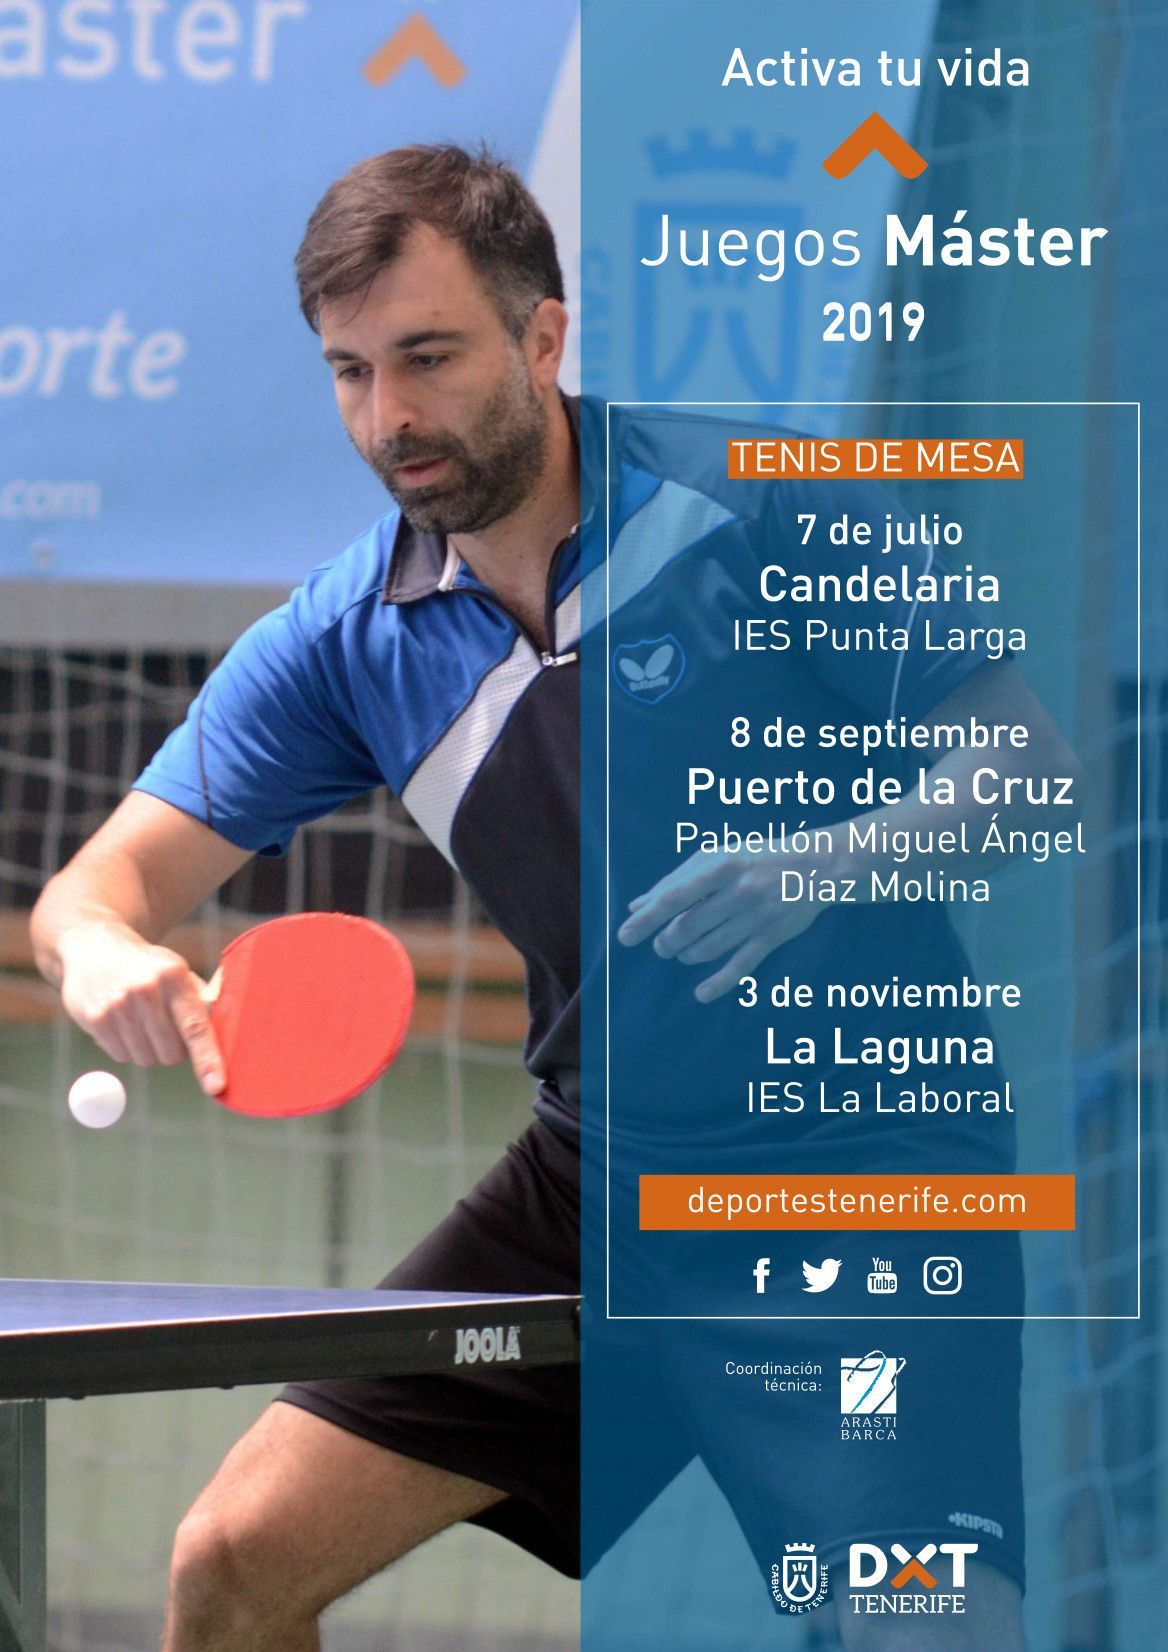 Juegos Máster 2019 Tenis de Mesa